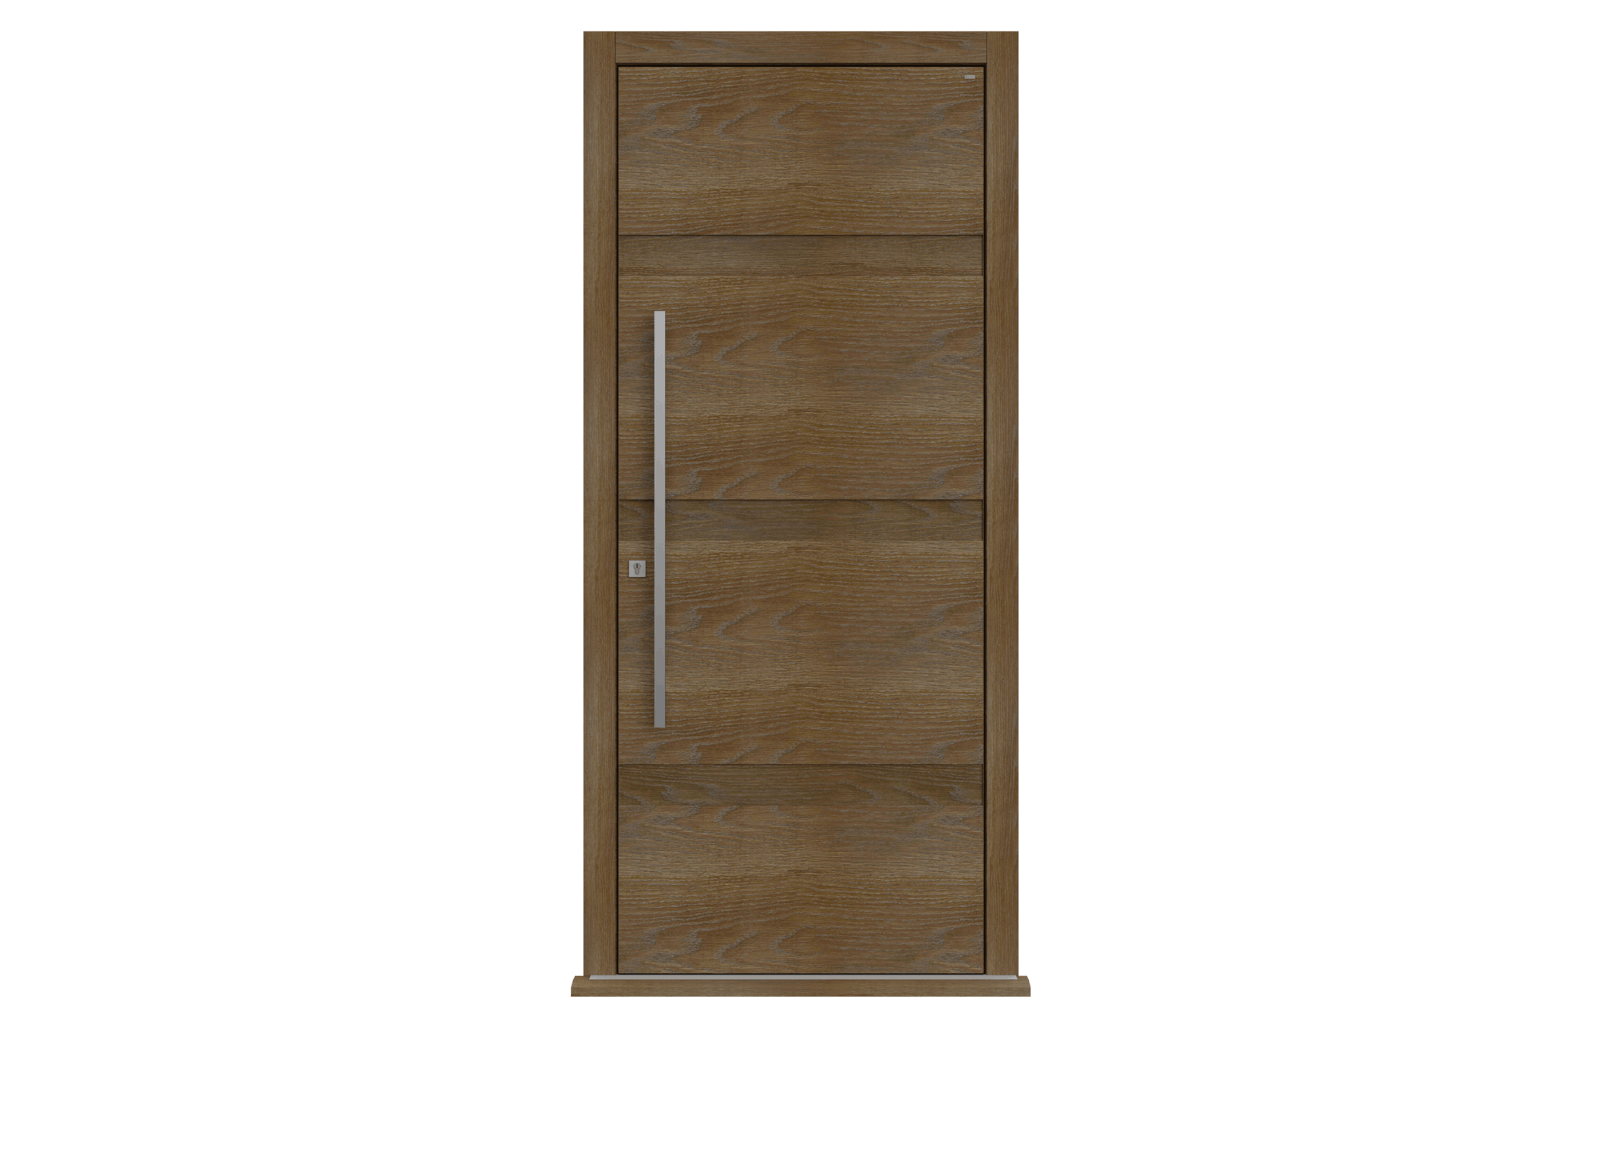 Walnut Stained Oak Single leaf front door - Linea by Deuren